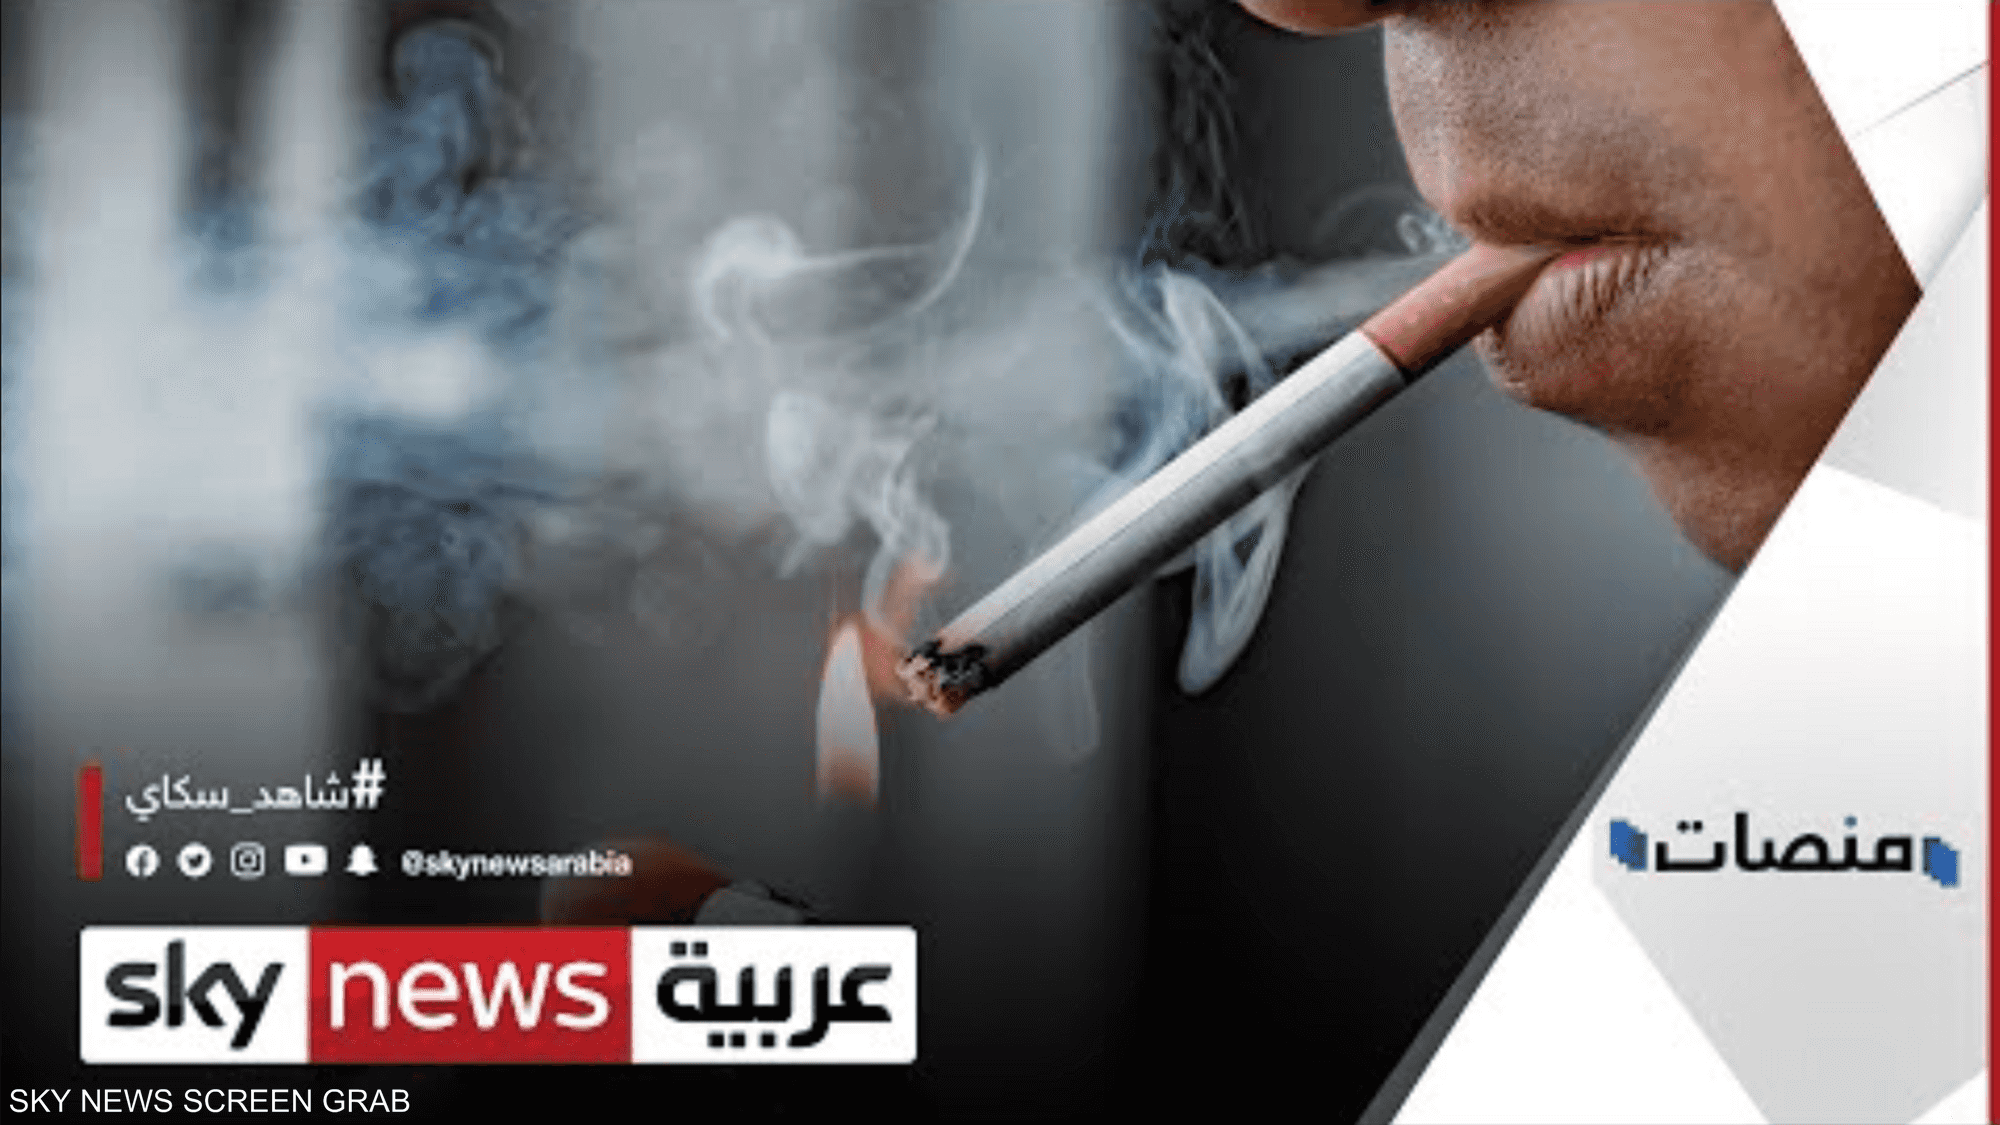 التدخين والتهور في القيادة ممنوعان في الدراما السورية